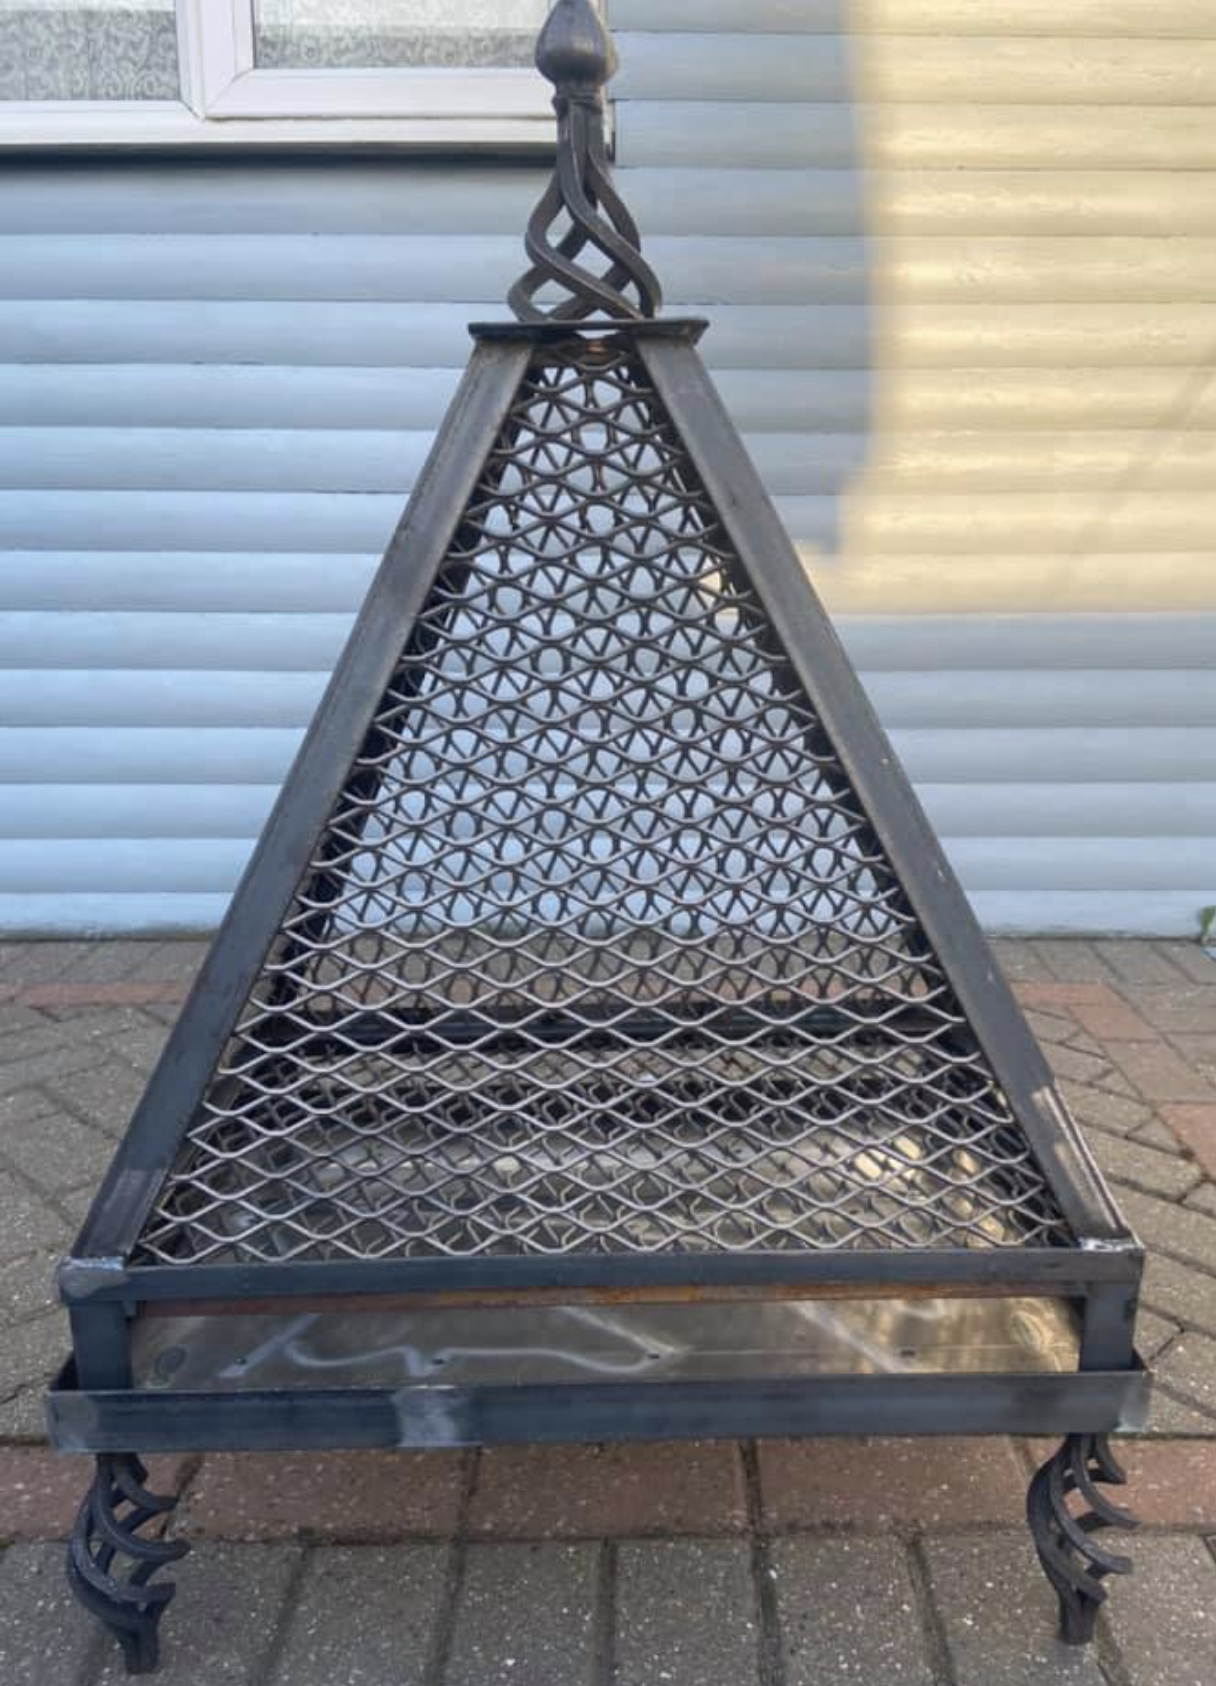 fire Pyramid burner bbq 600x400x900